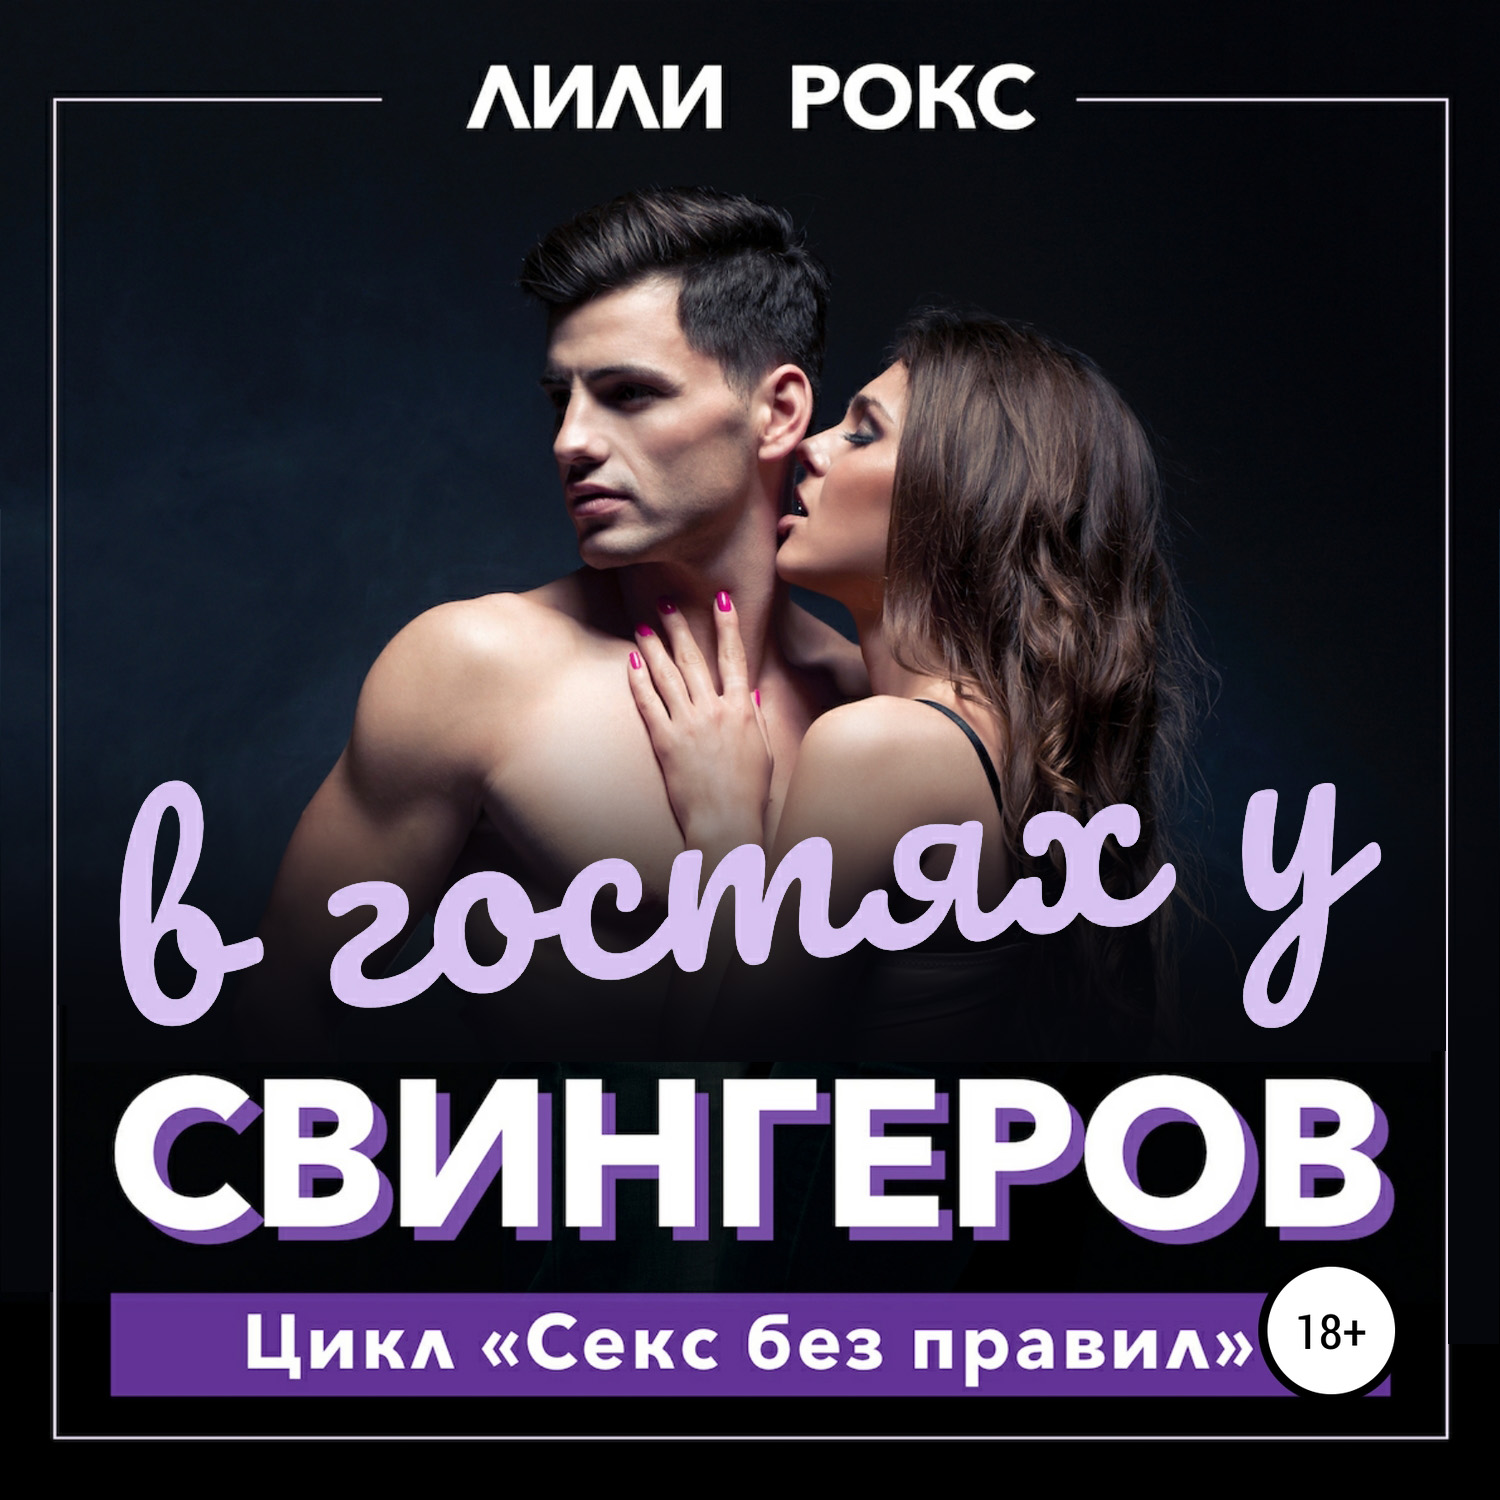 Русские свингеры частное домашнее порно - смотреть онлайн порно видео